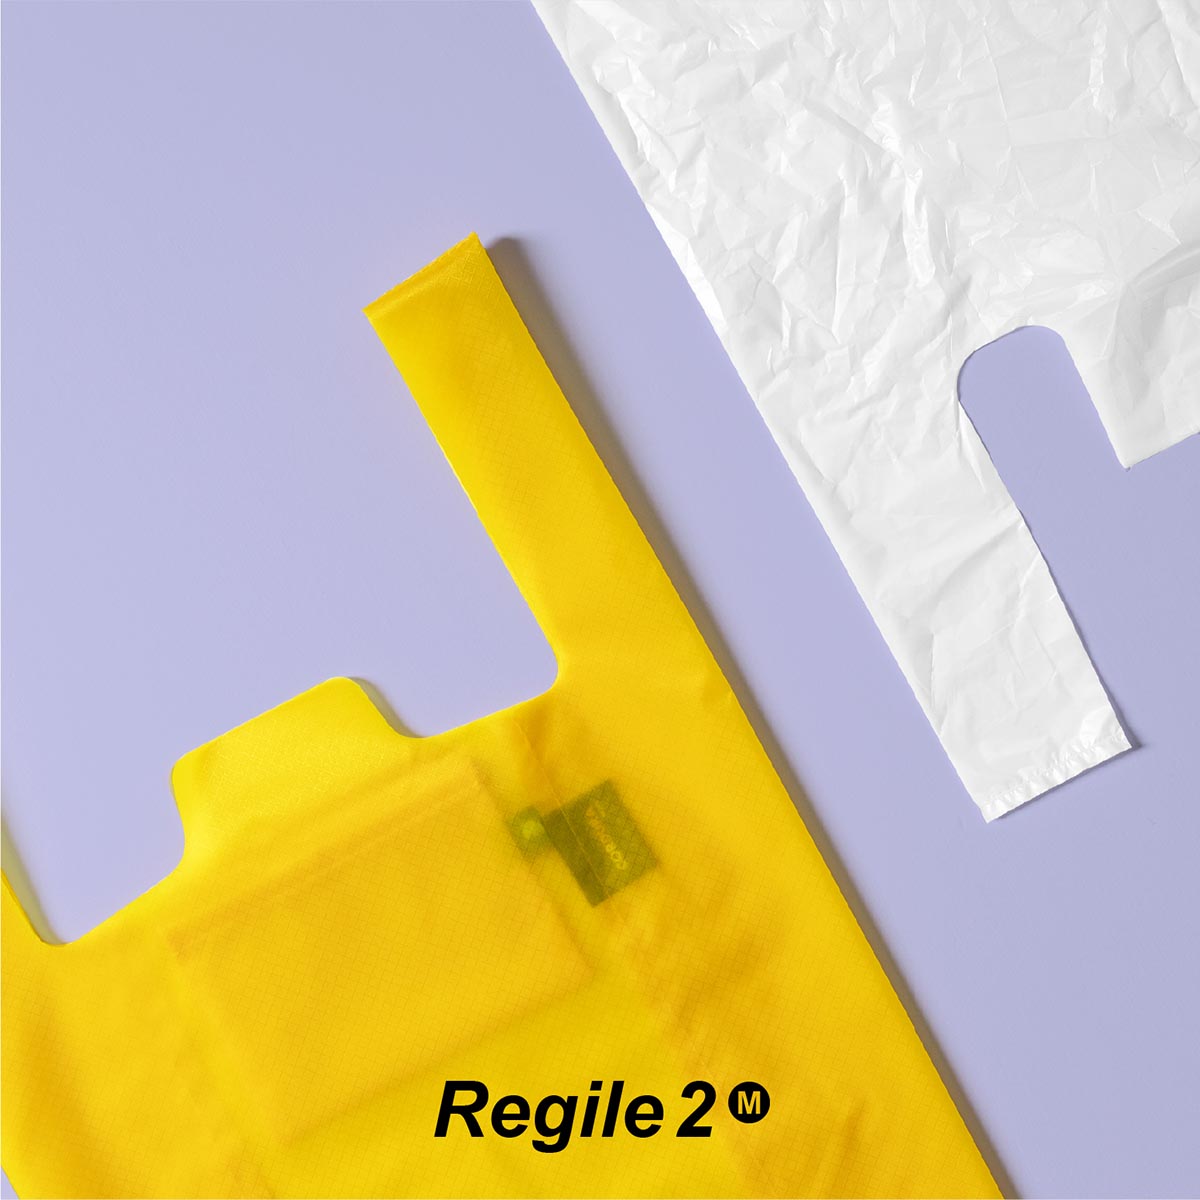  エコバッグ 折りたたみ Regile2（レジル2） Mサイズ コンパクト レジ袋 丈夫 おしゃれ メンズ 薄い 畳める ミニマル 日本製 エコバック コンビニ プチasoboze アソボーゼ 送料無料 新生活 ギフト プレゼント プチギフト